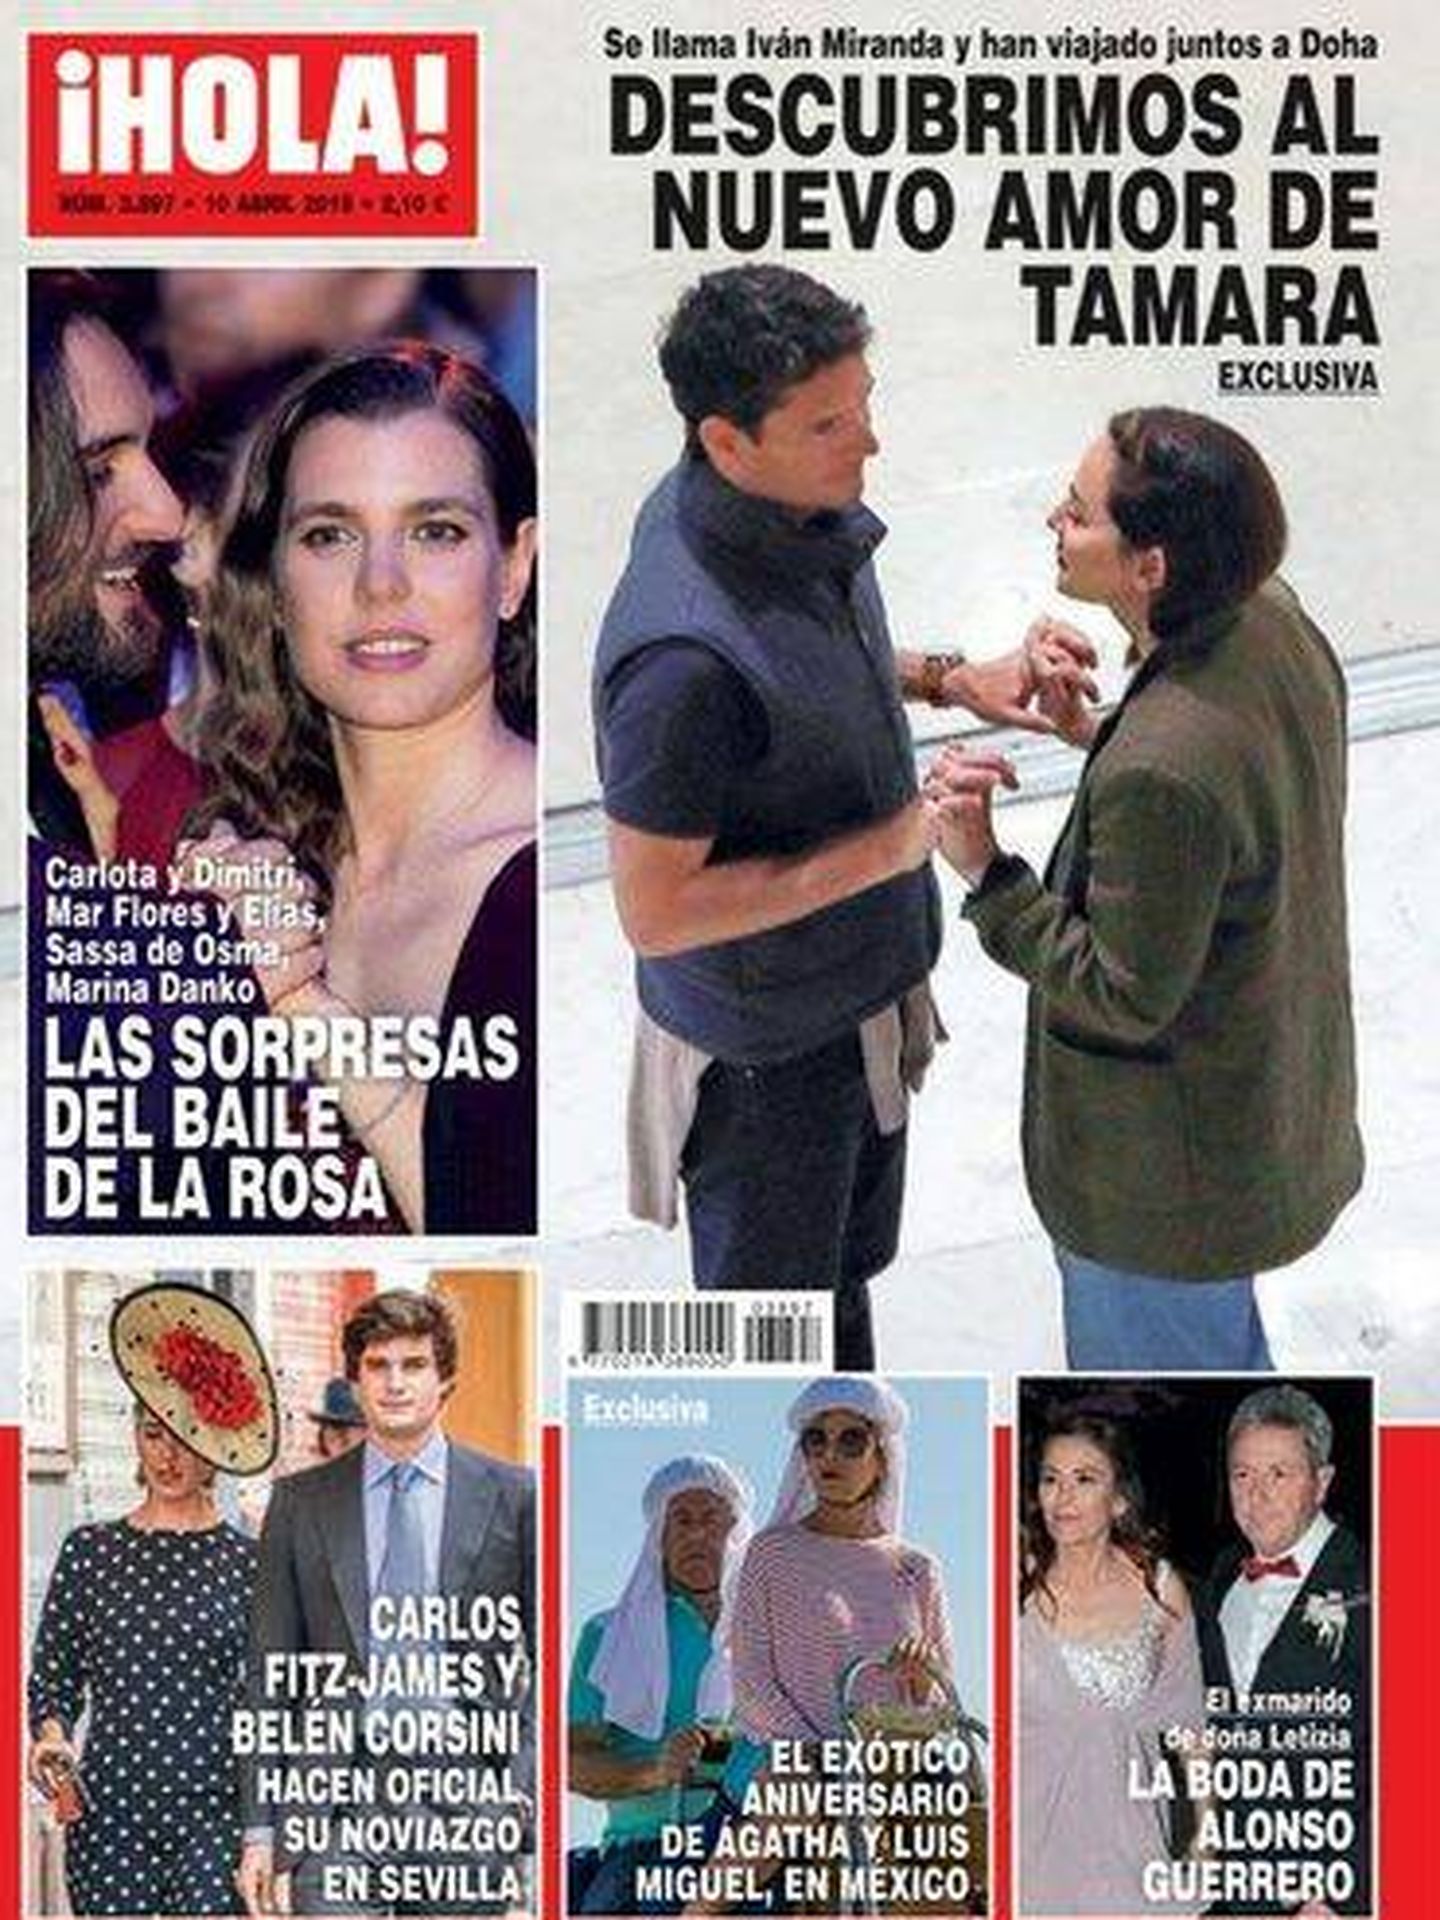 Iván Miranda y Tamara Falcó, en la portada de la revista ¡Hola!.